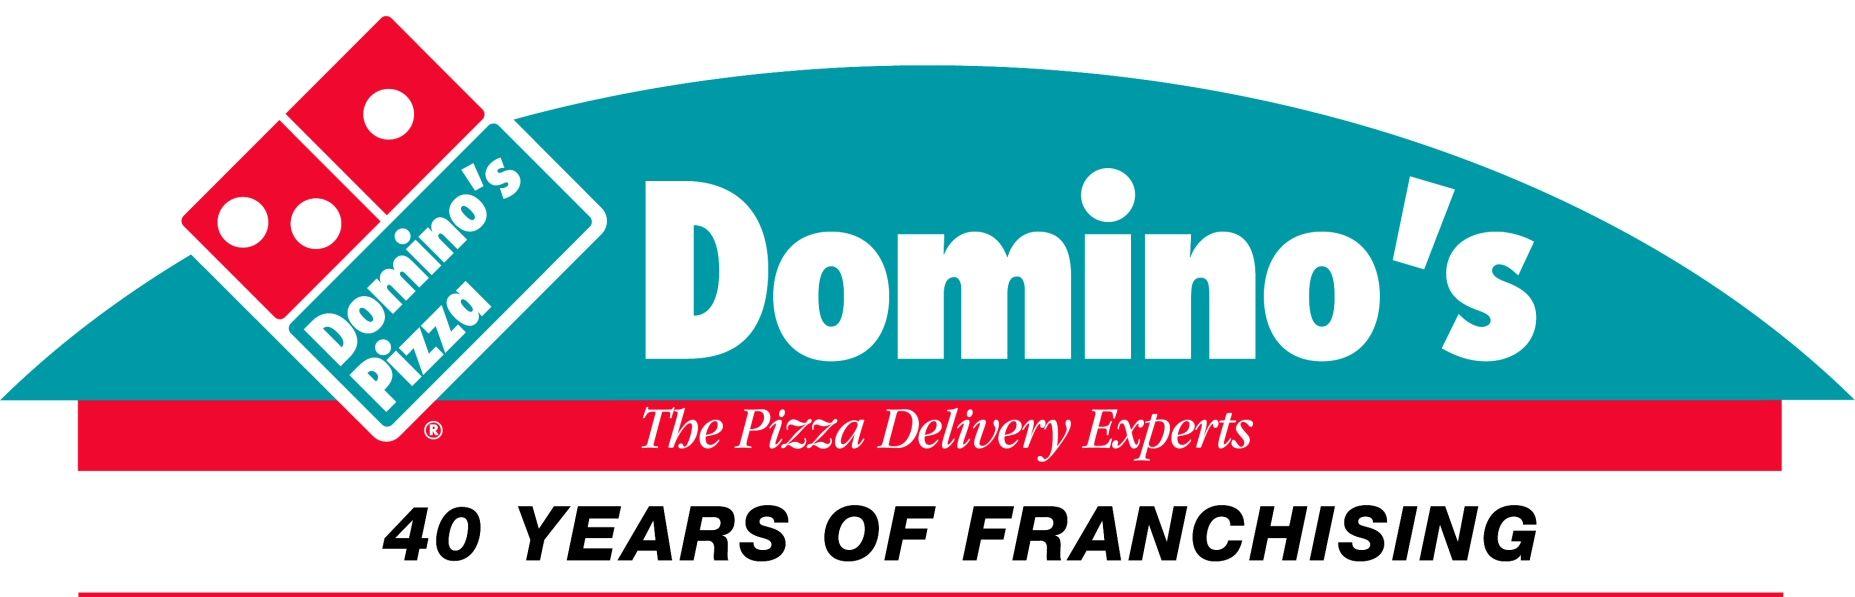 Domino's Pizza Logo - Domino's | Logopedia | FANDOM powered by Wikia